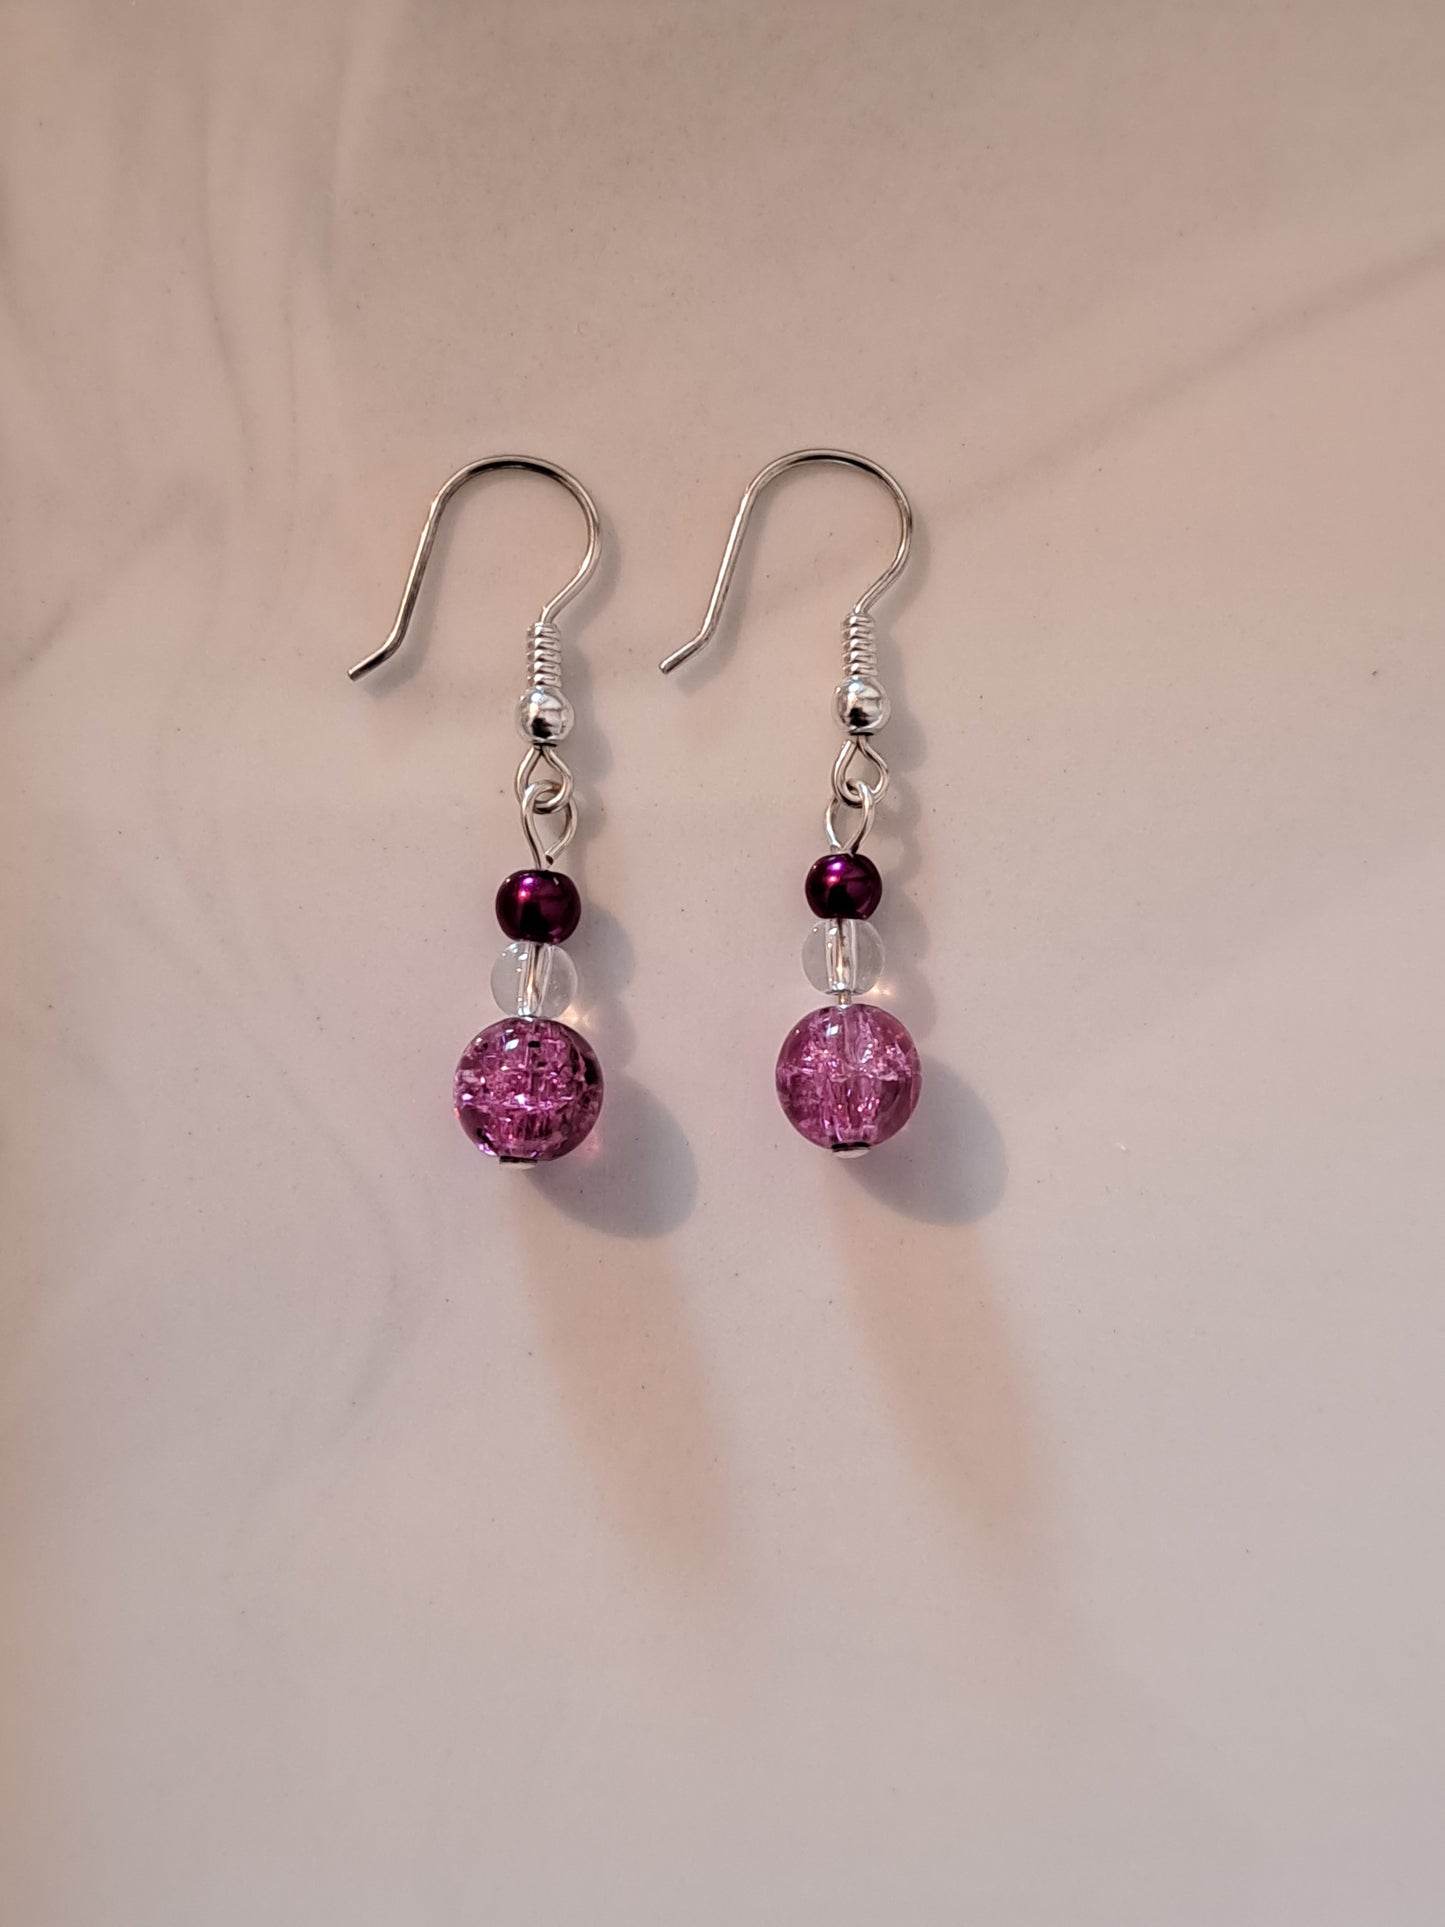 Boucles d'oreilles en argent avec perles nacrées et craquelées rose. Site de bijoux en ligne. France